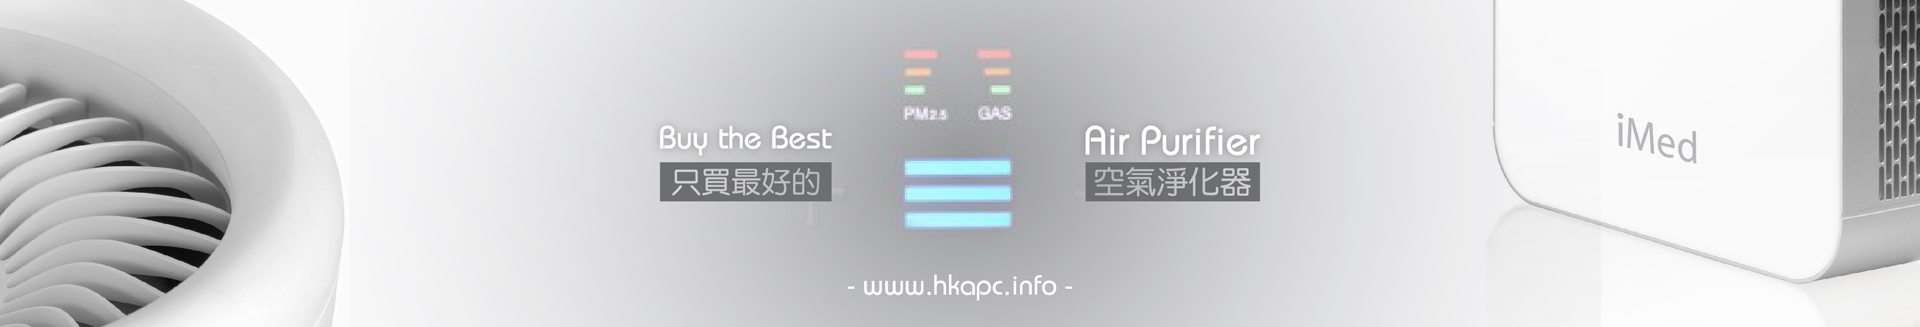 HKAPC air purifier